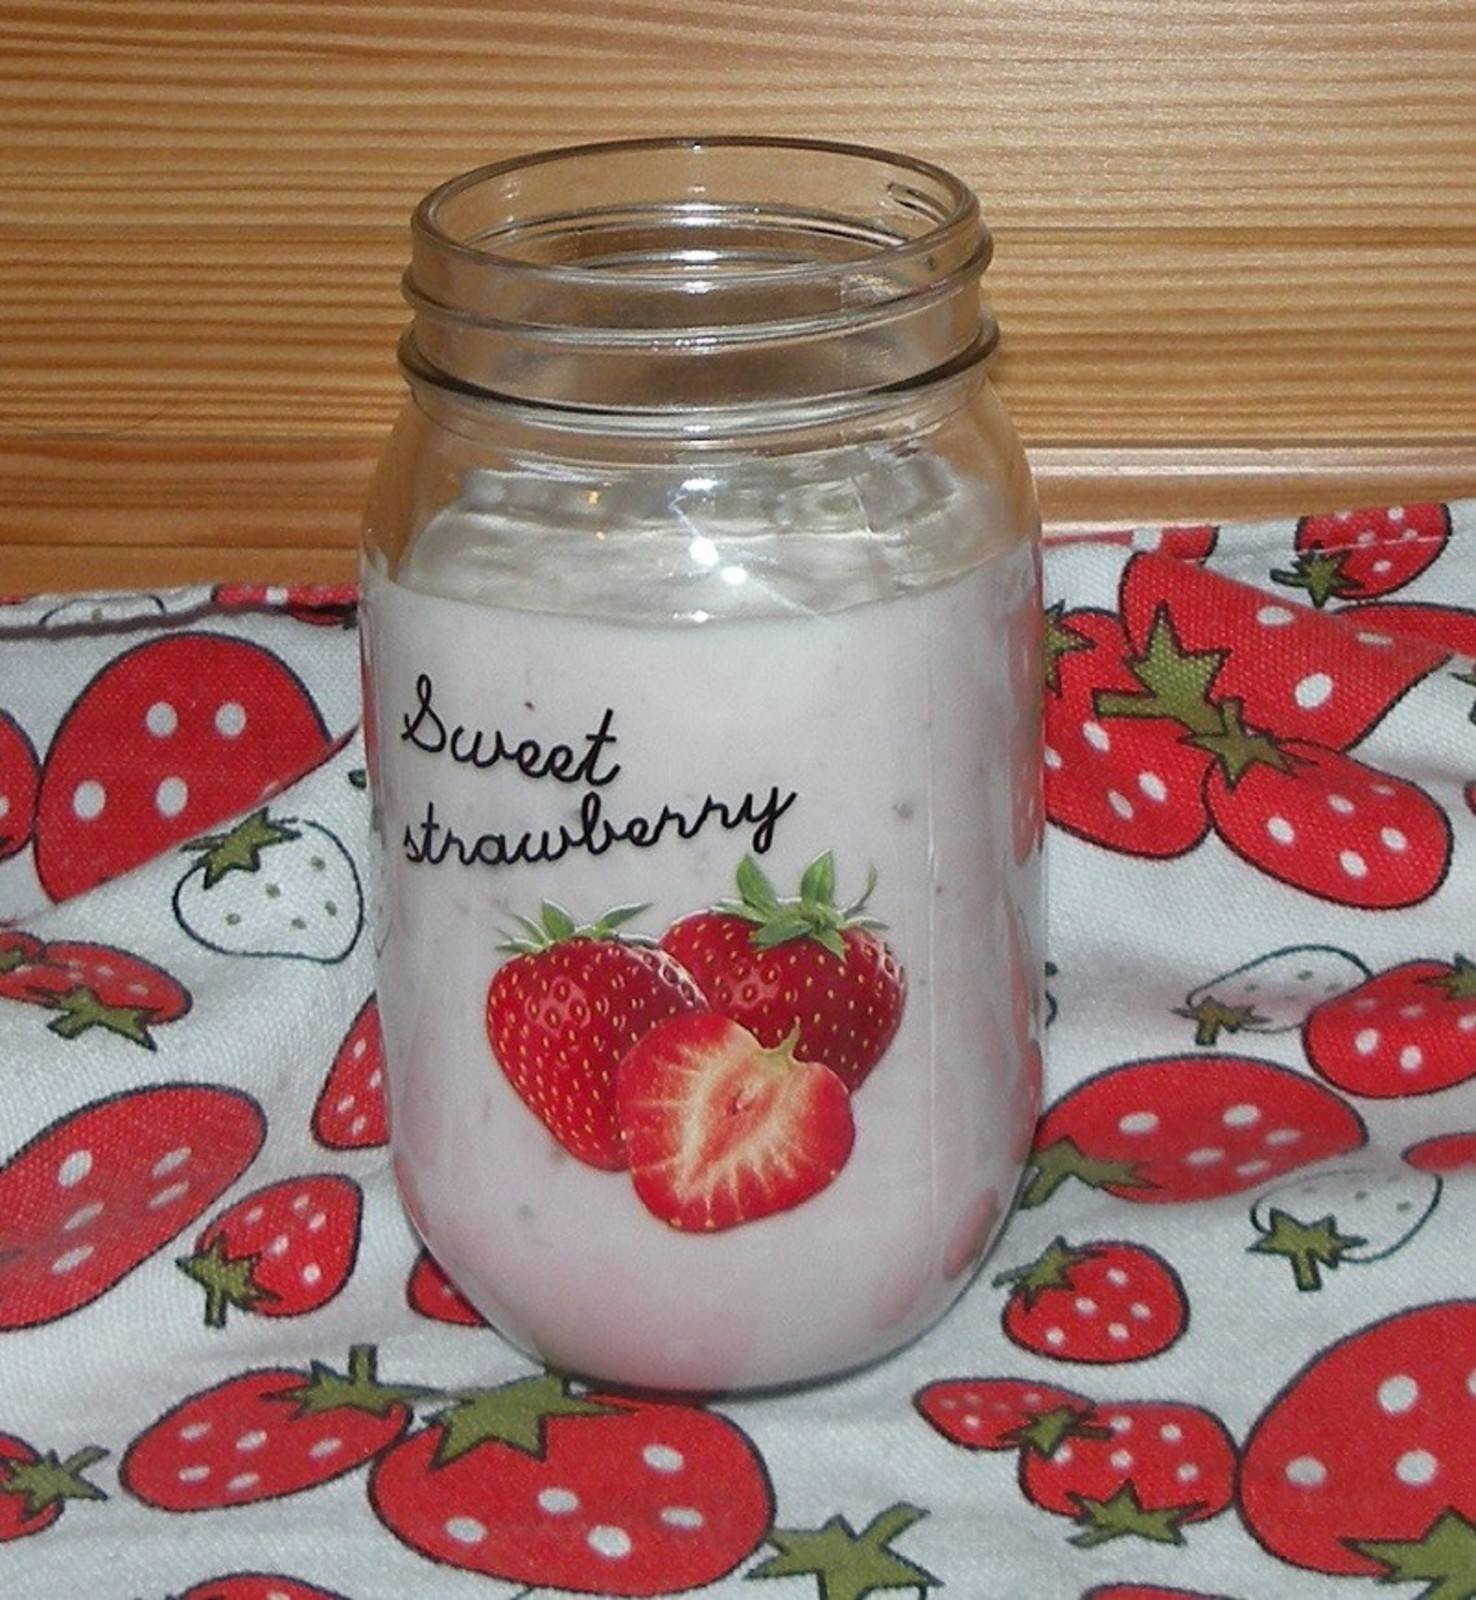 Erdbeerjoghurt deluxe